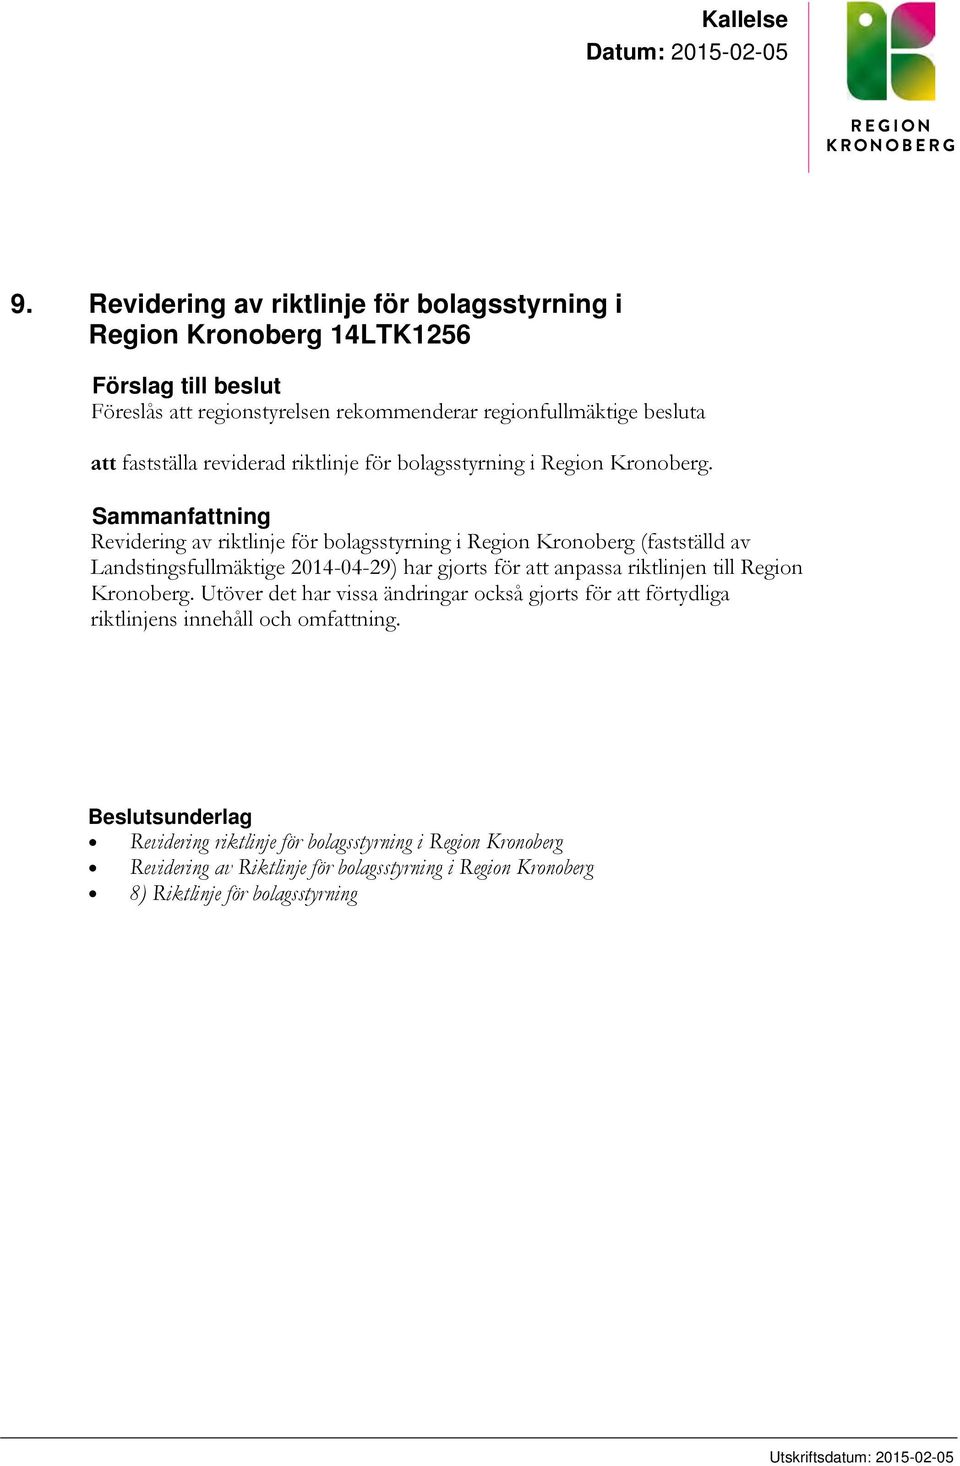 riktlinje för bolagsstyrning i Region Kronoberg.